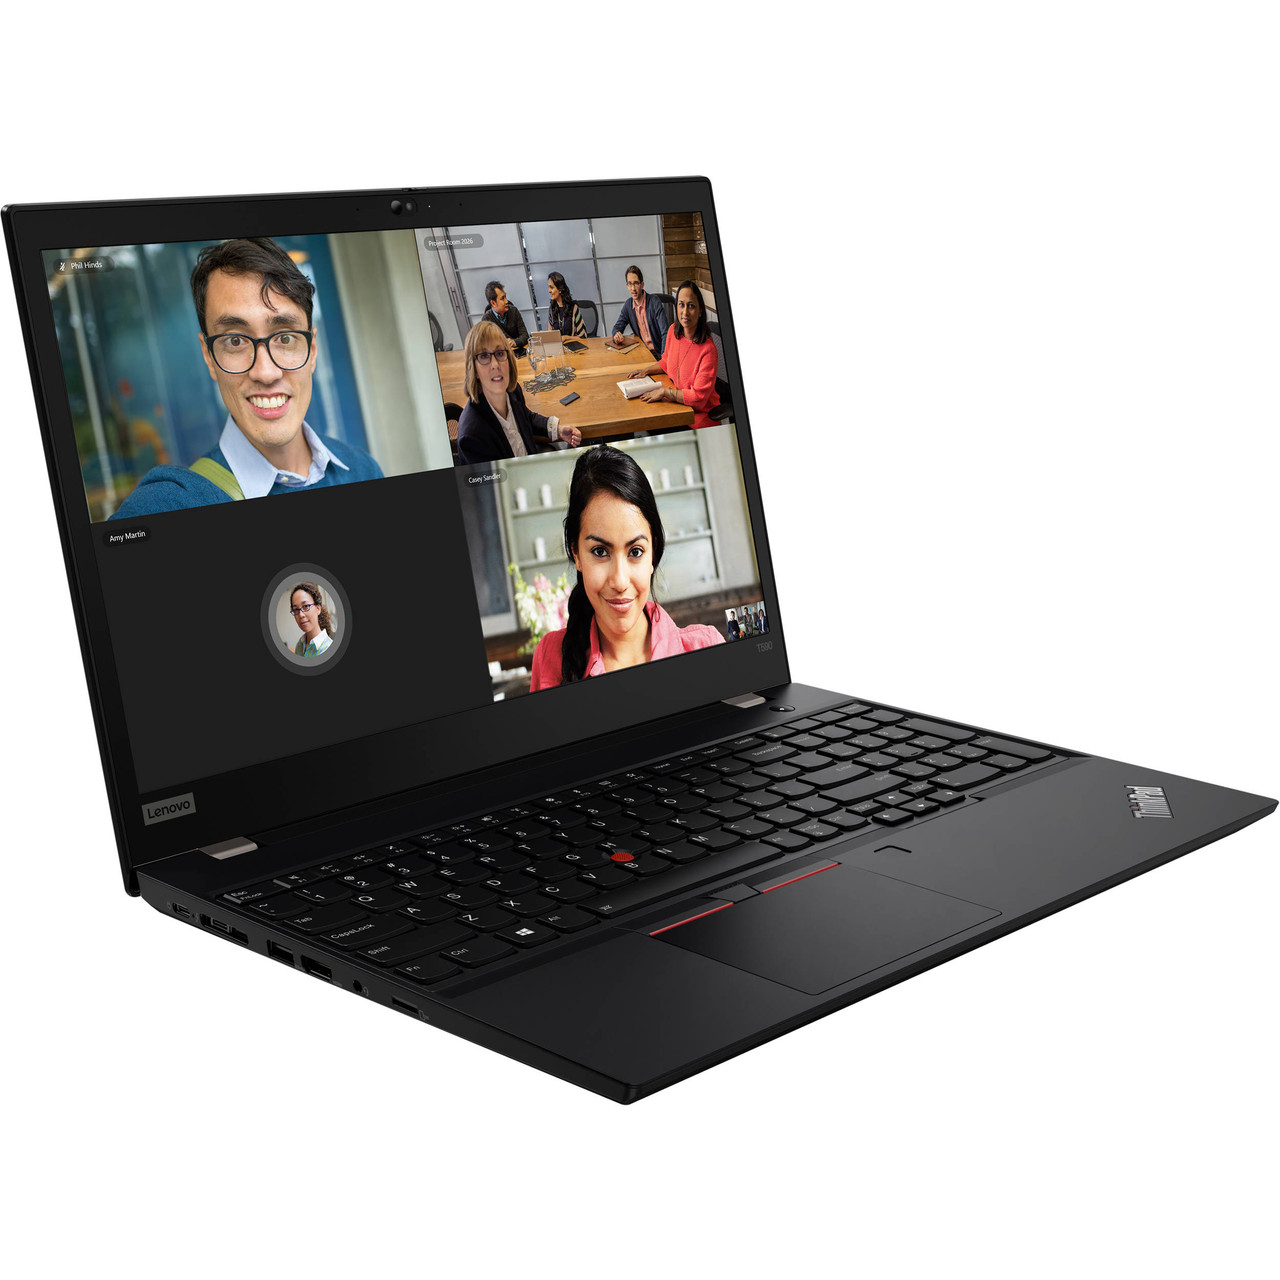 Lenovo ThinkPad T590 15.6" FHD i5-8265U 8GB 256GB SSD FPR Webcam W10Pro Warranty